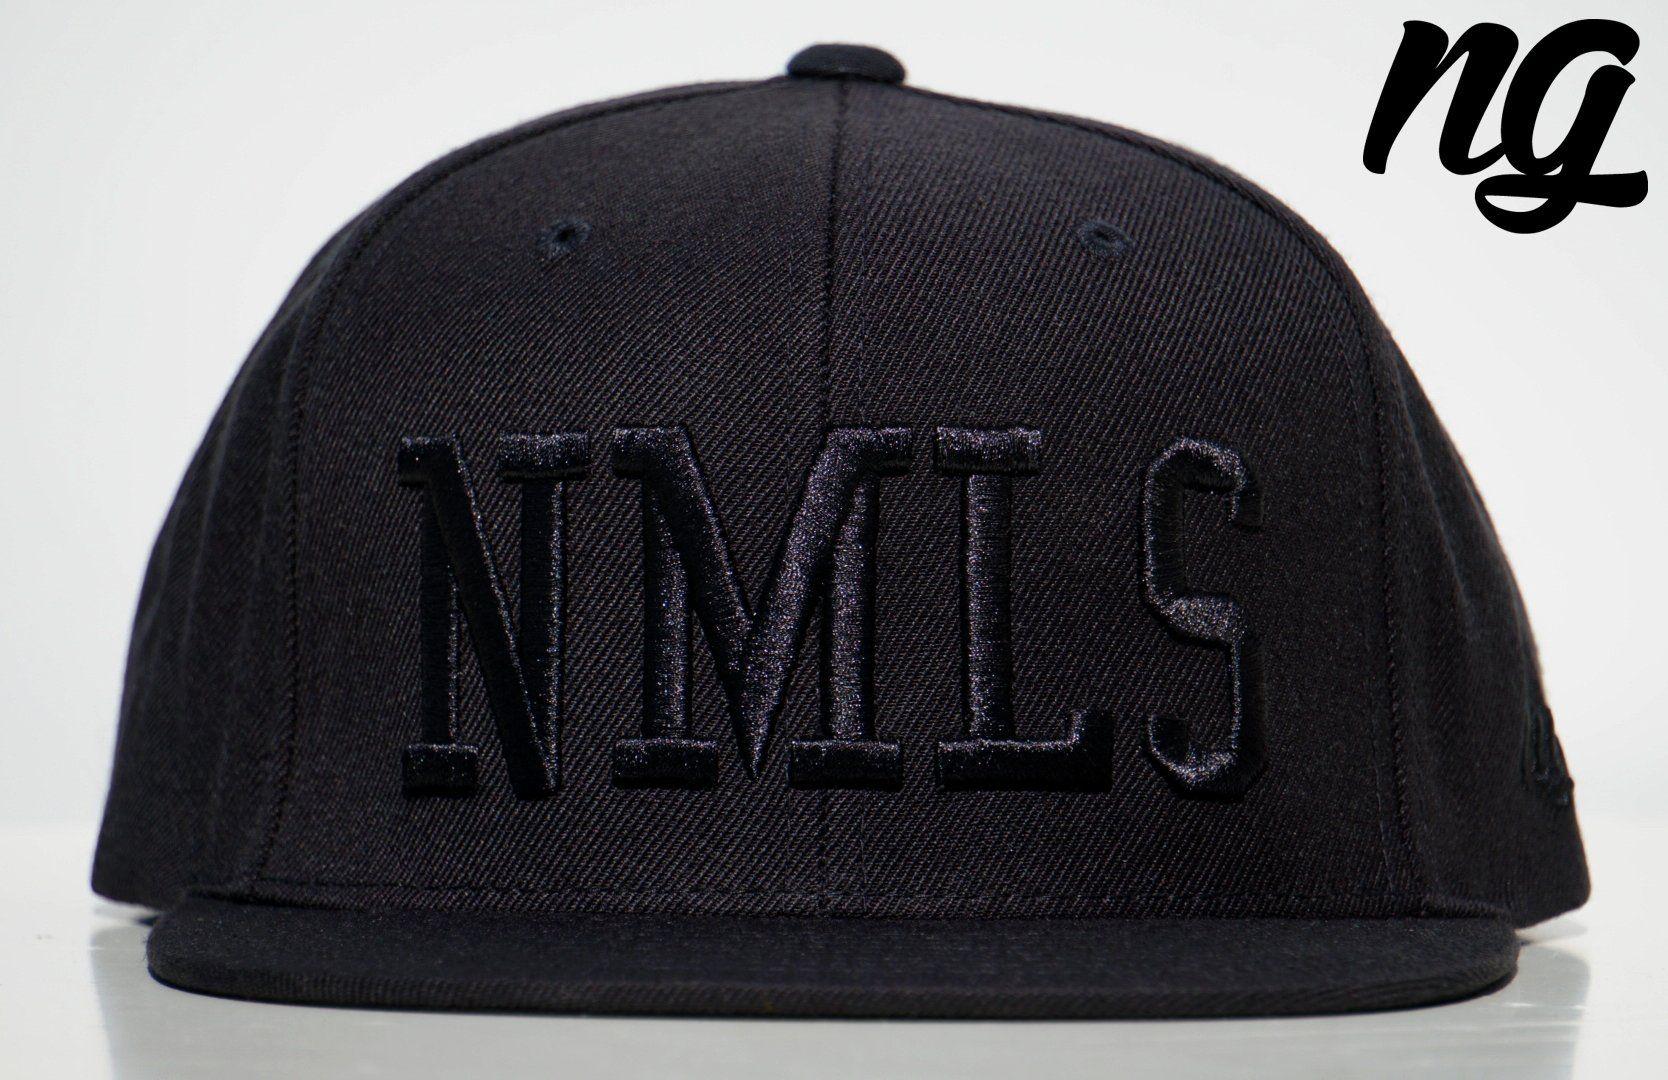 NMLS Logo - NMLS Logo Snapback Hat